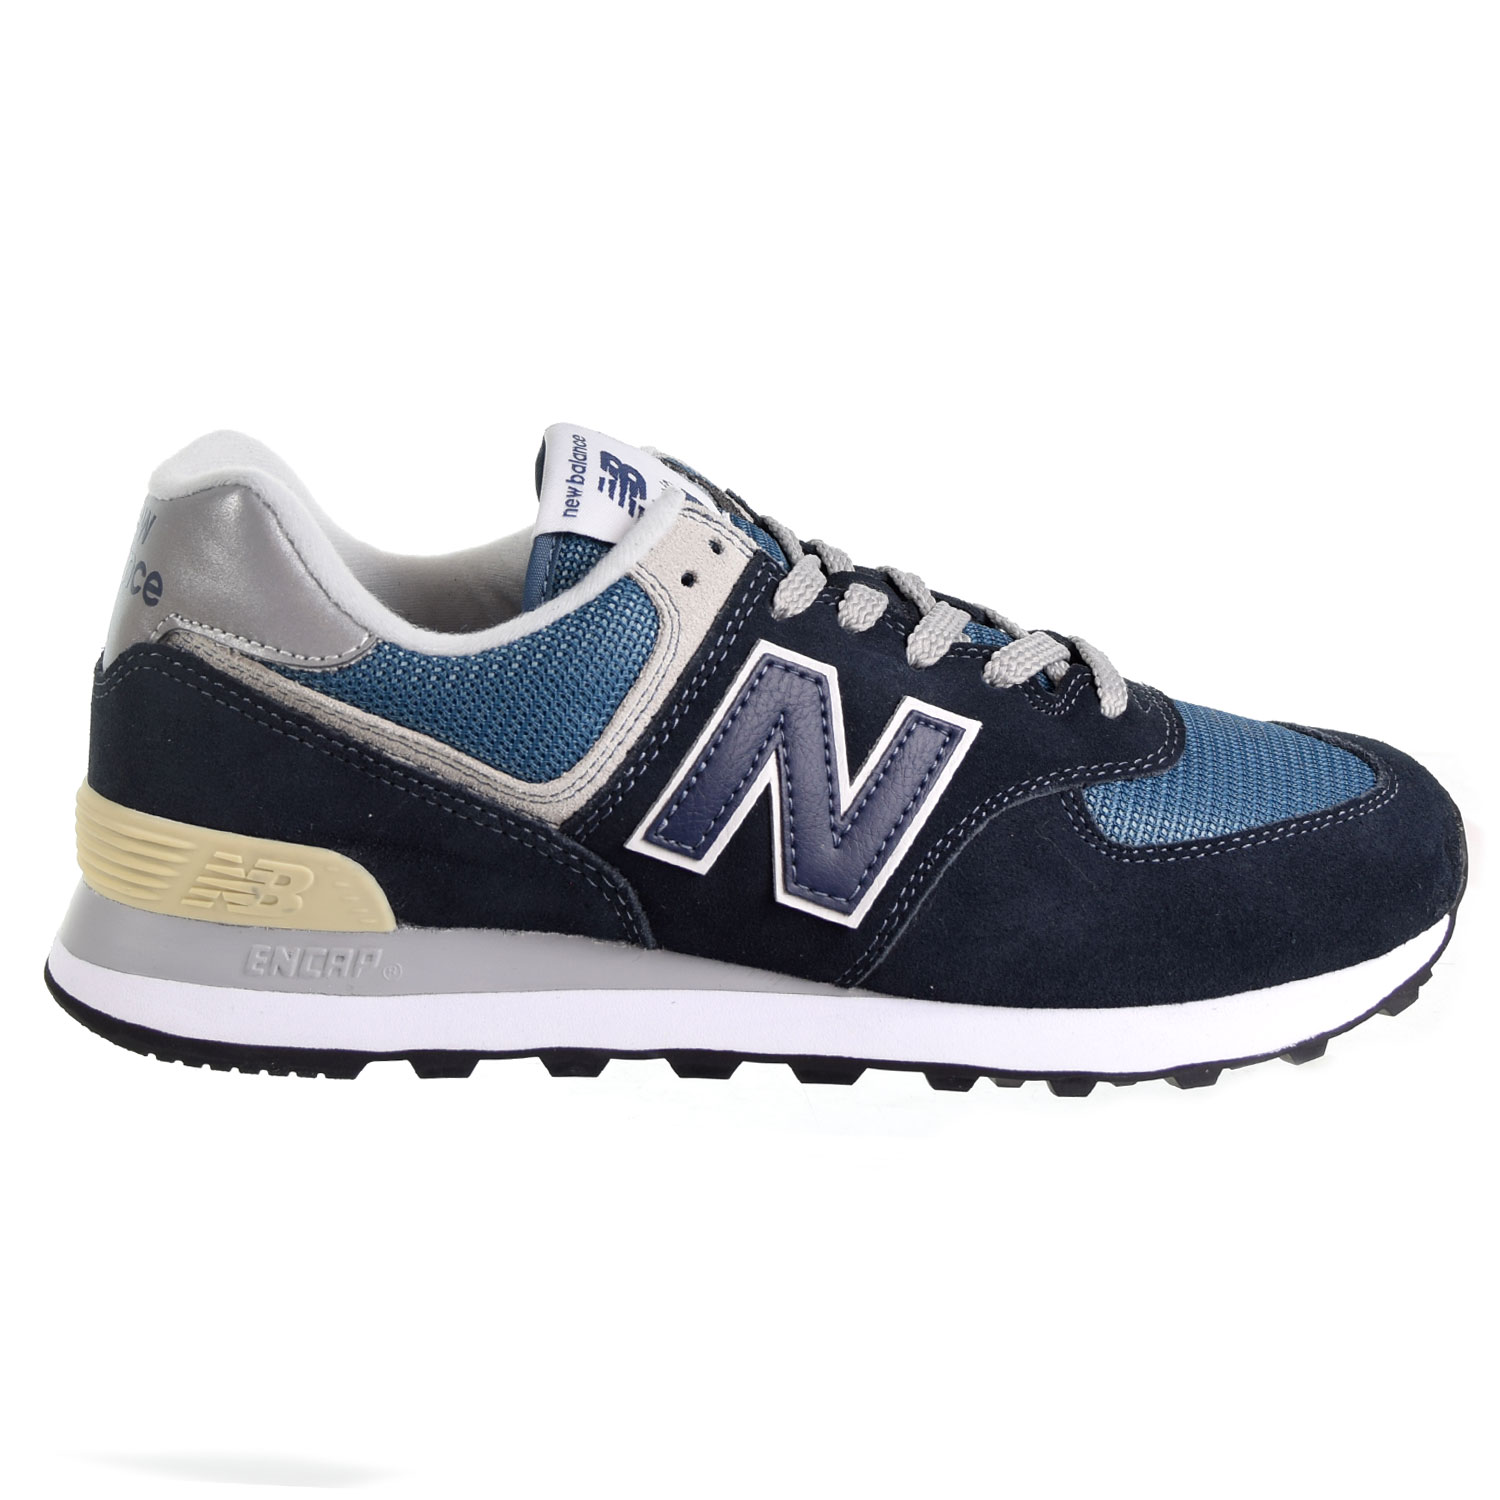 New Balance 574 мужские туфли темно-синий-Aqua | eBay